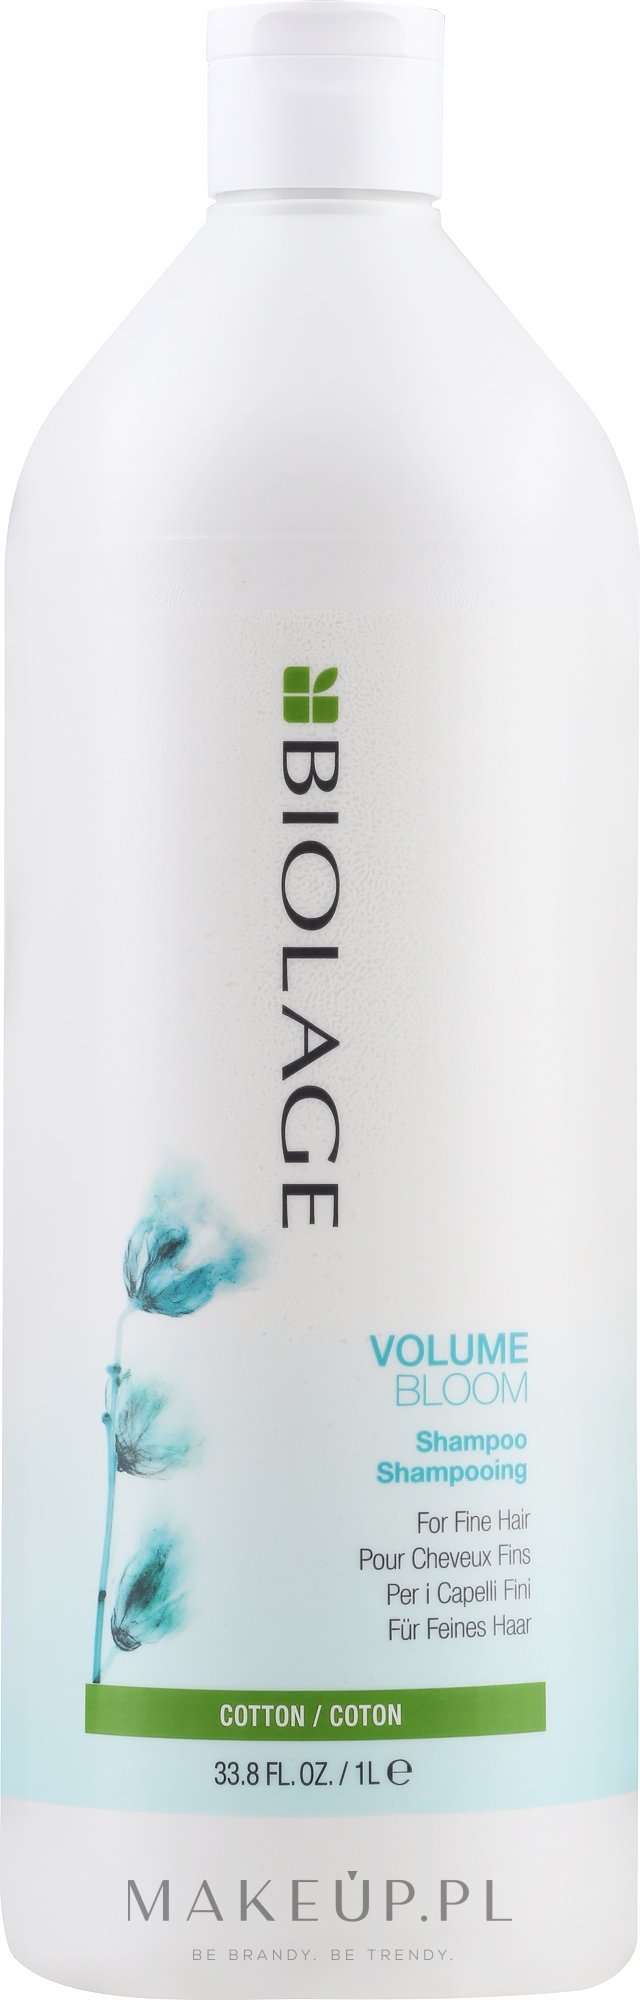 Szampon zapewniający włosom objętość i blask - Biolage Volumebloom Cotton Shampoo — Zdjęcie 1000 ml